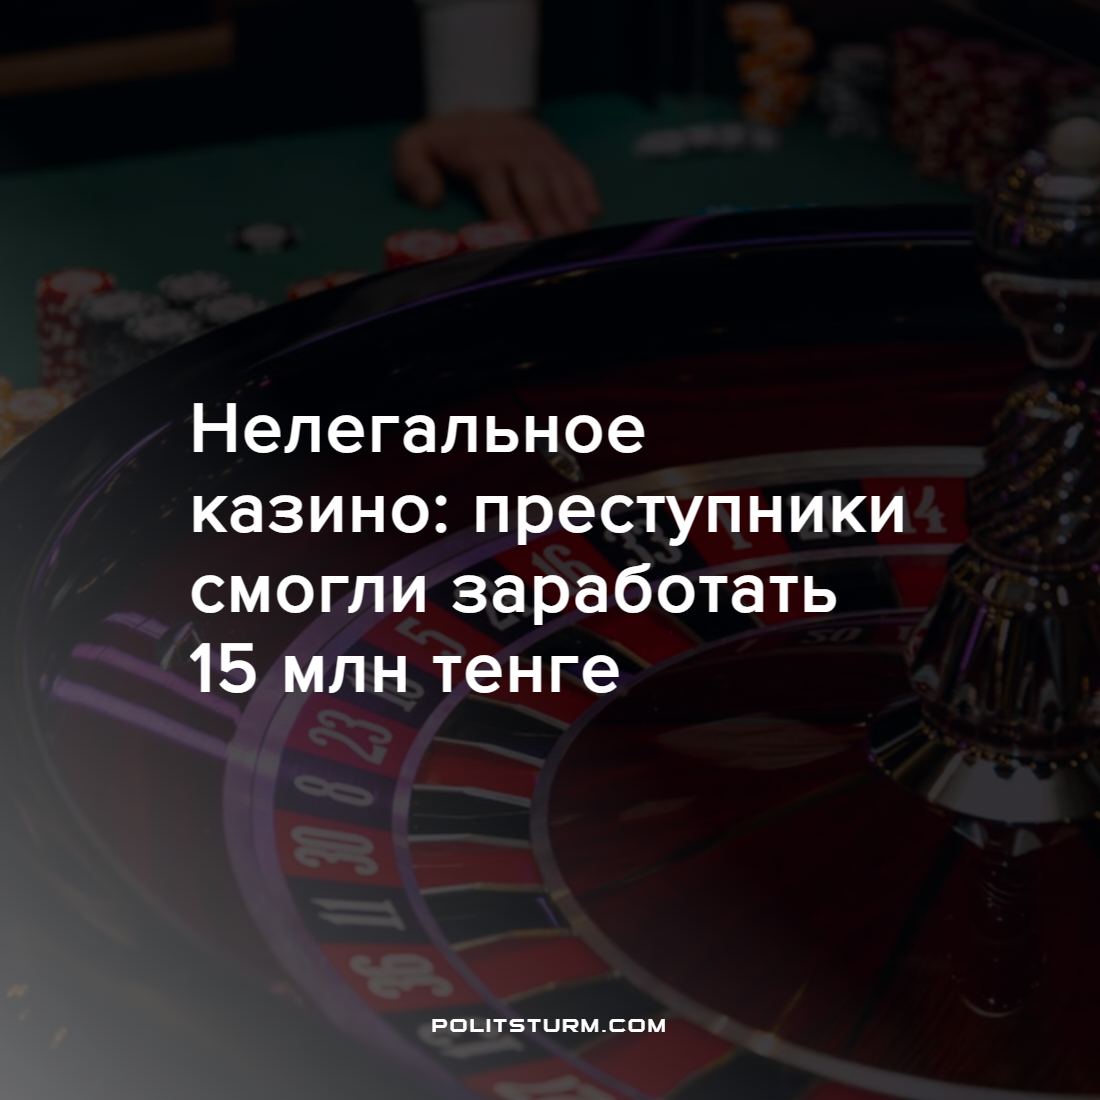 Обман зарабатывать в казино игры покер холдем онлайн